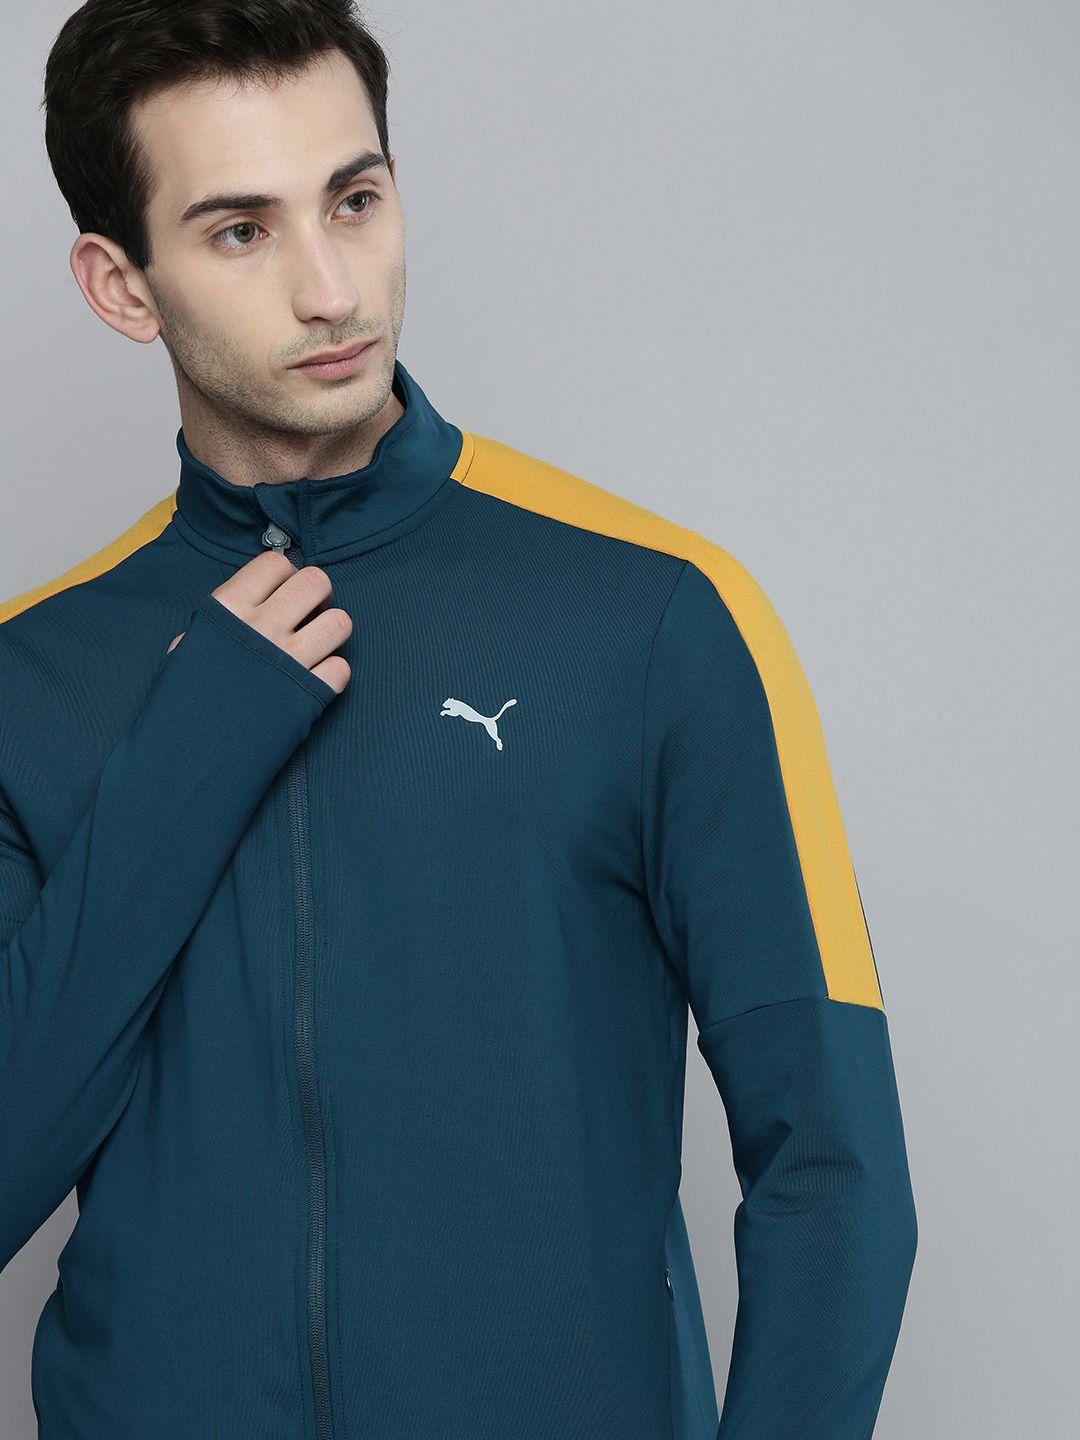 one8 x puma men teal blue & yellow colourblocked virat kohli sporty track jacket